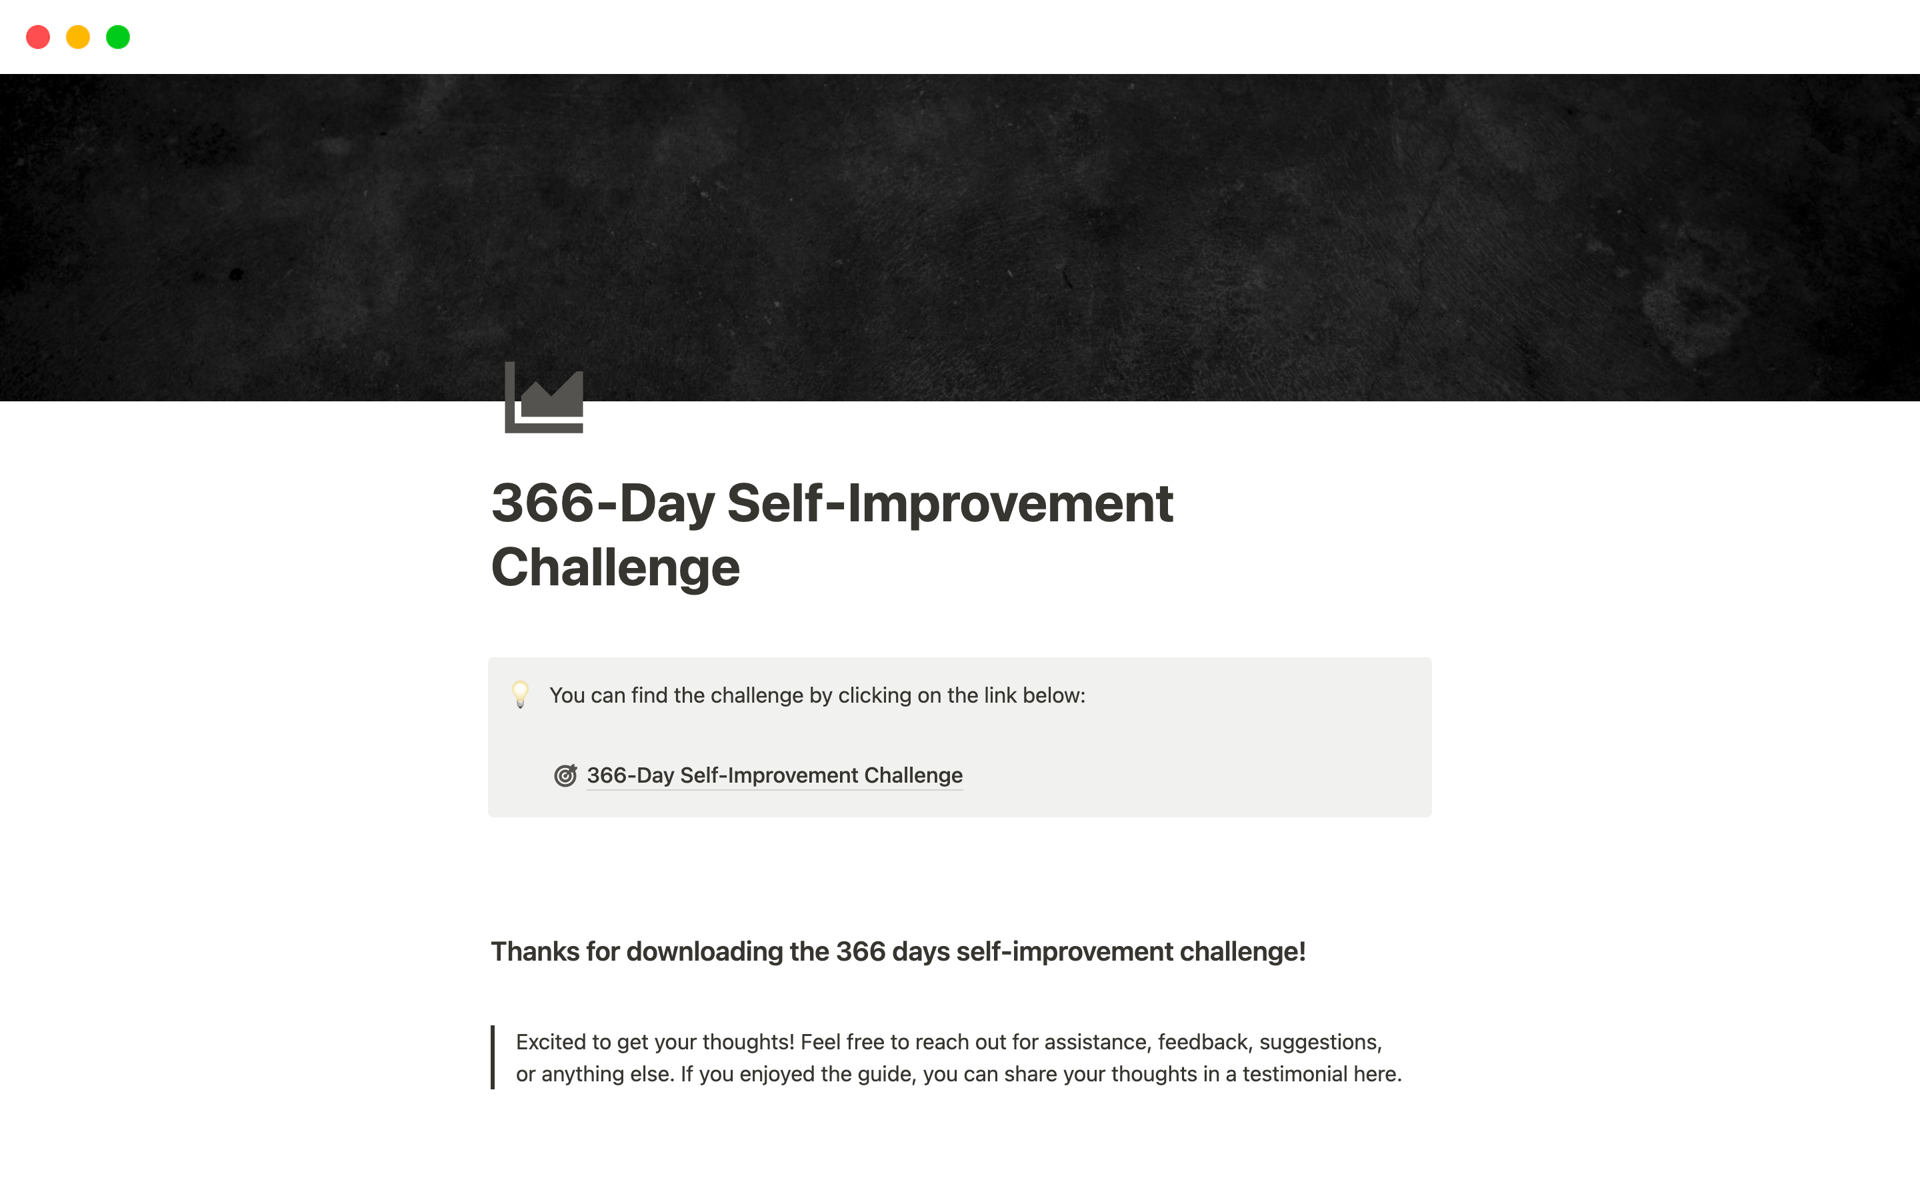 Uma prévia do modelo para 366-Day Self-Improvement Challenge